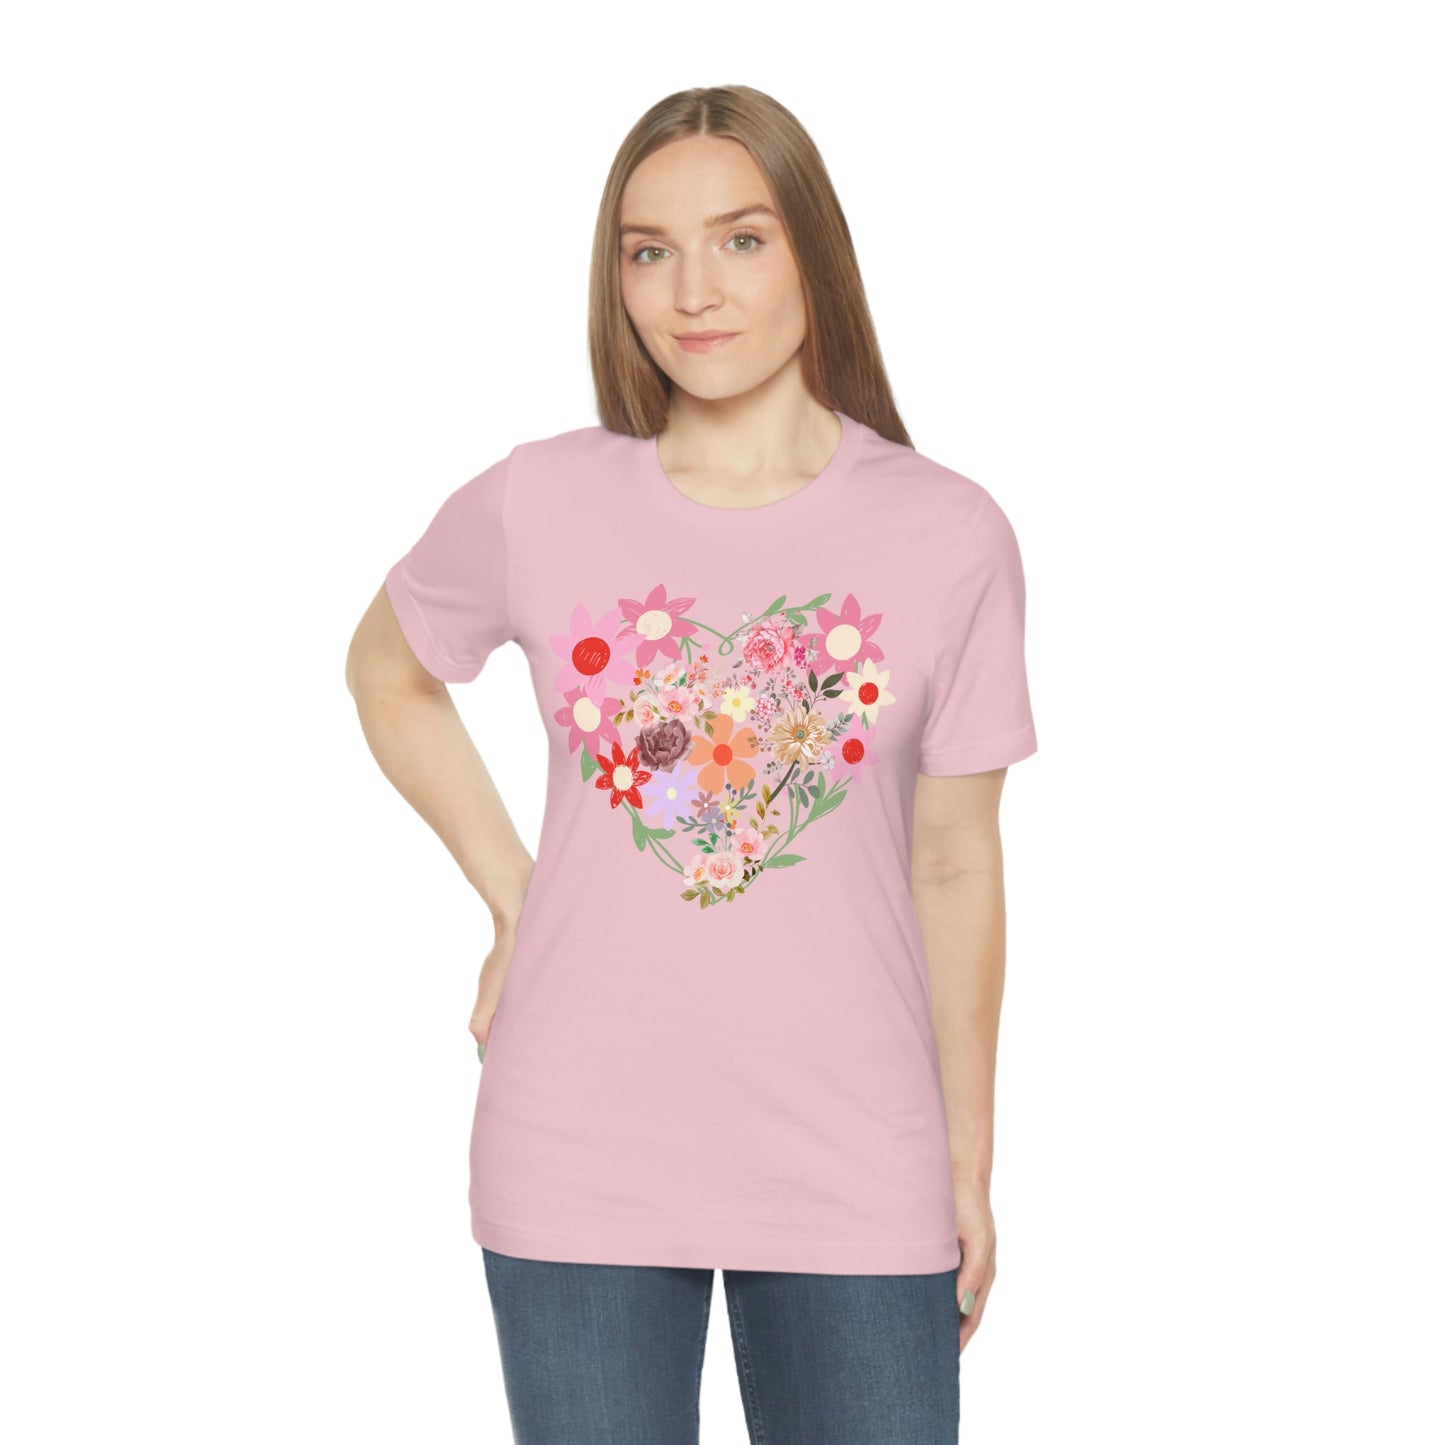 Flower Heart Shirt - Love Shirt - Floral Heart Shirt